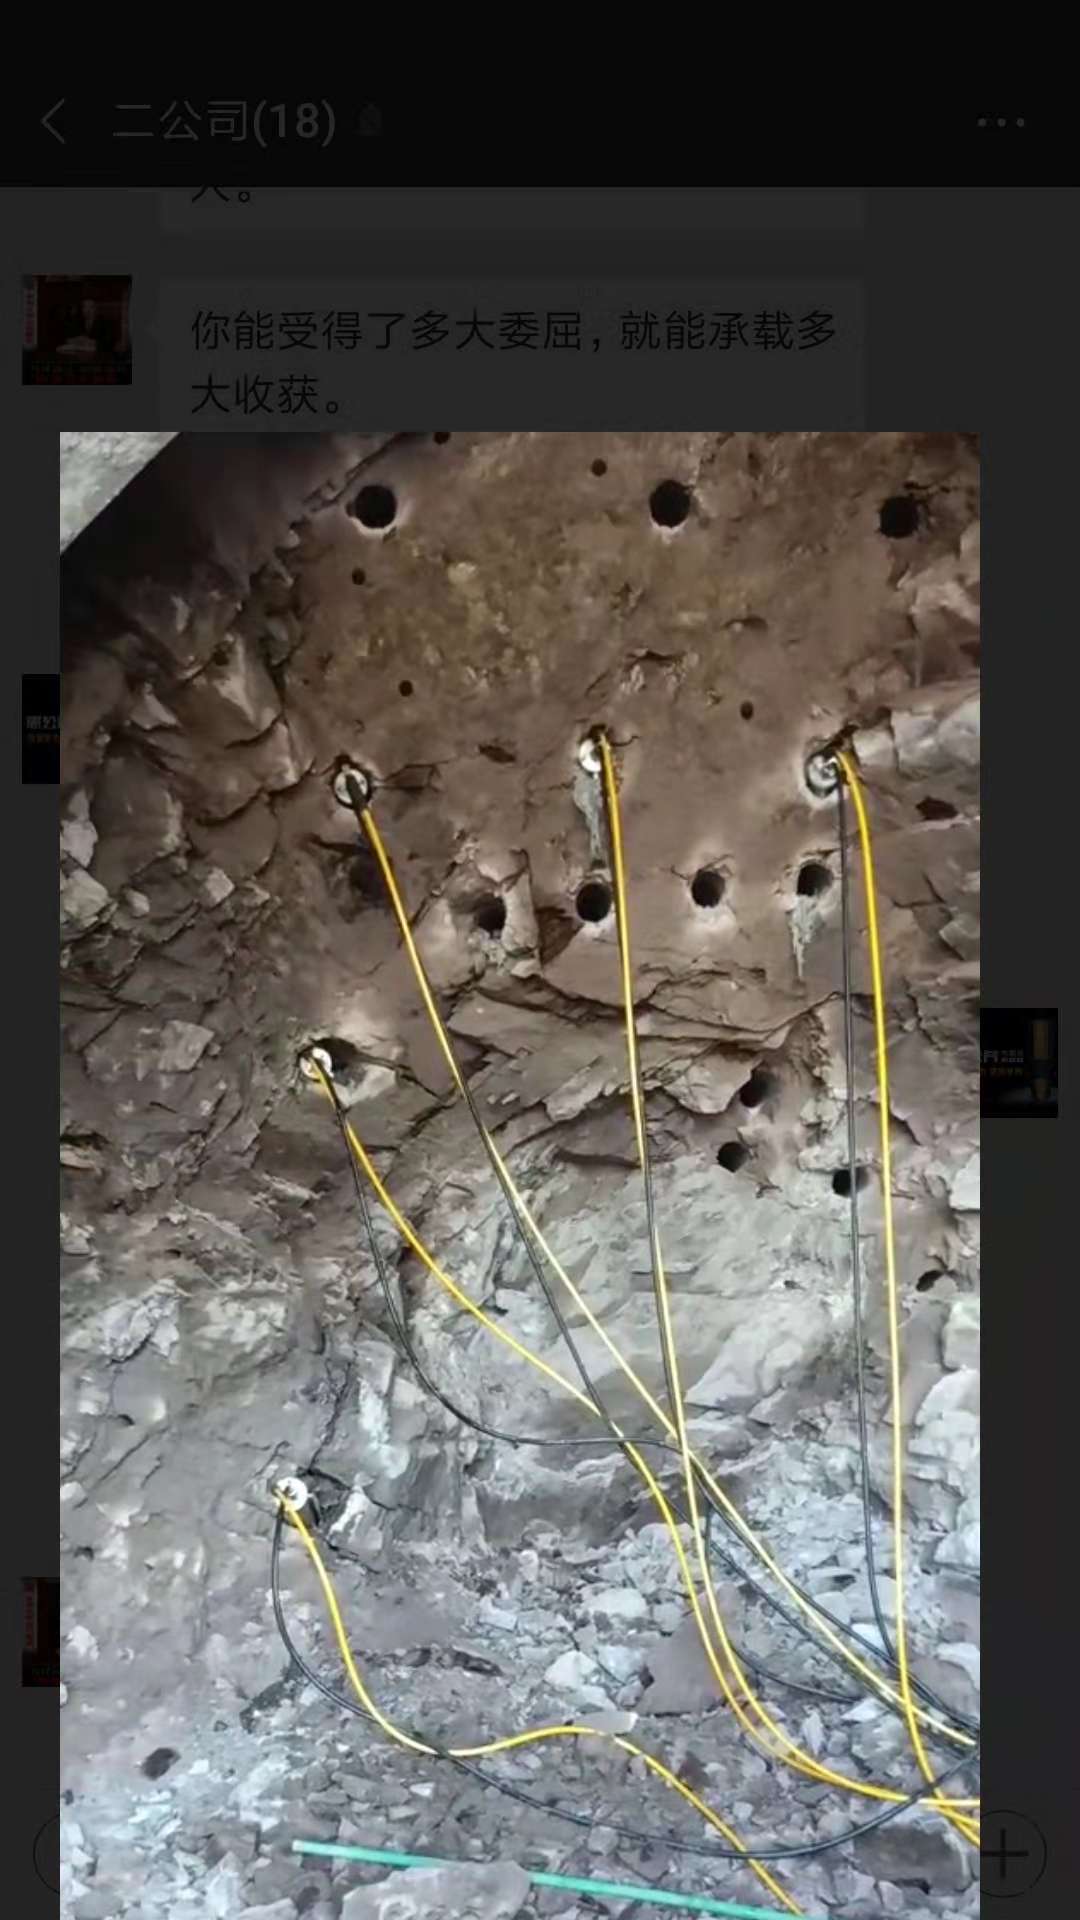 开挖石头做地下室机器劈裂棒方案贵州雷山包安装调试